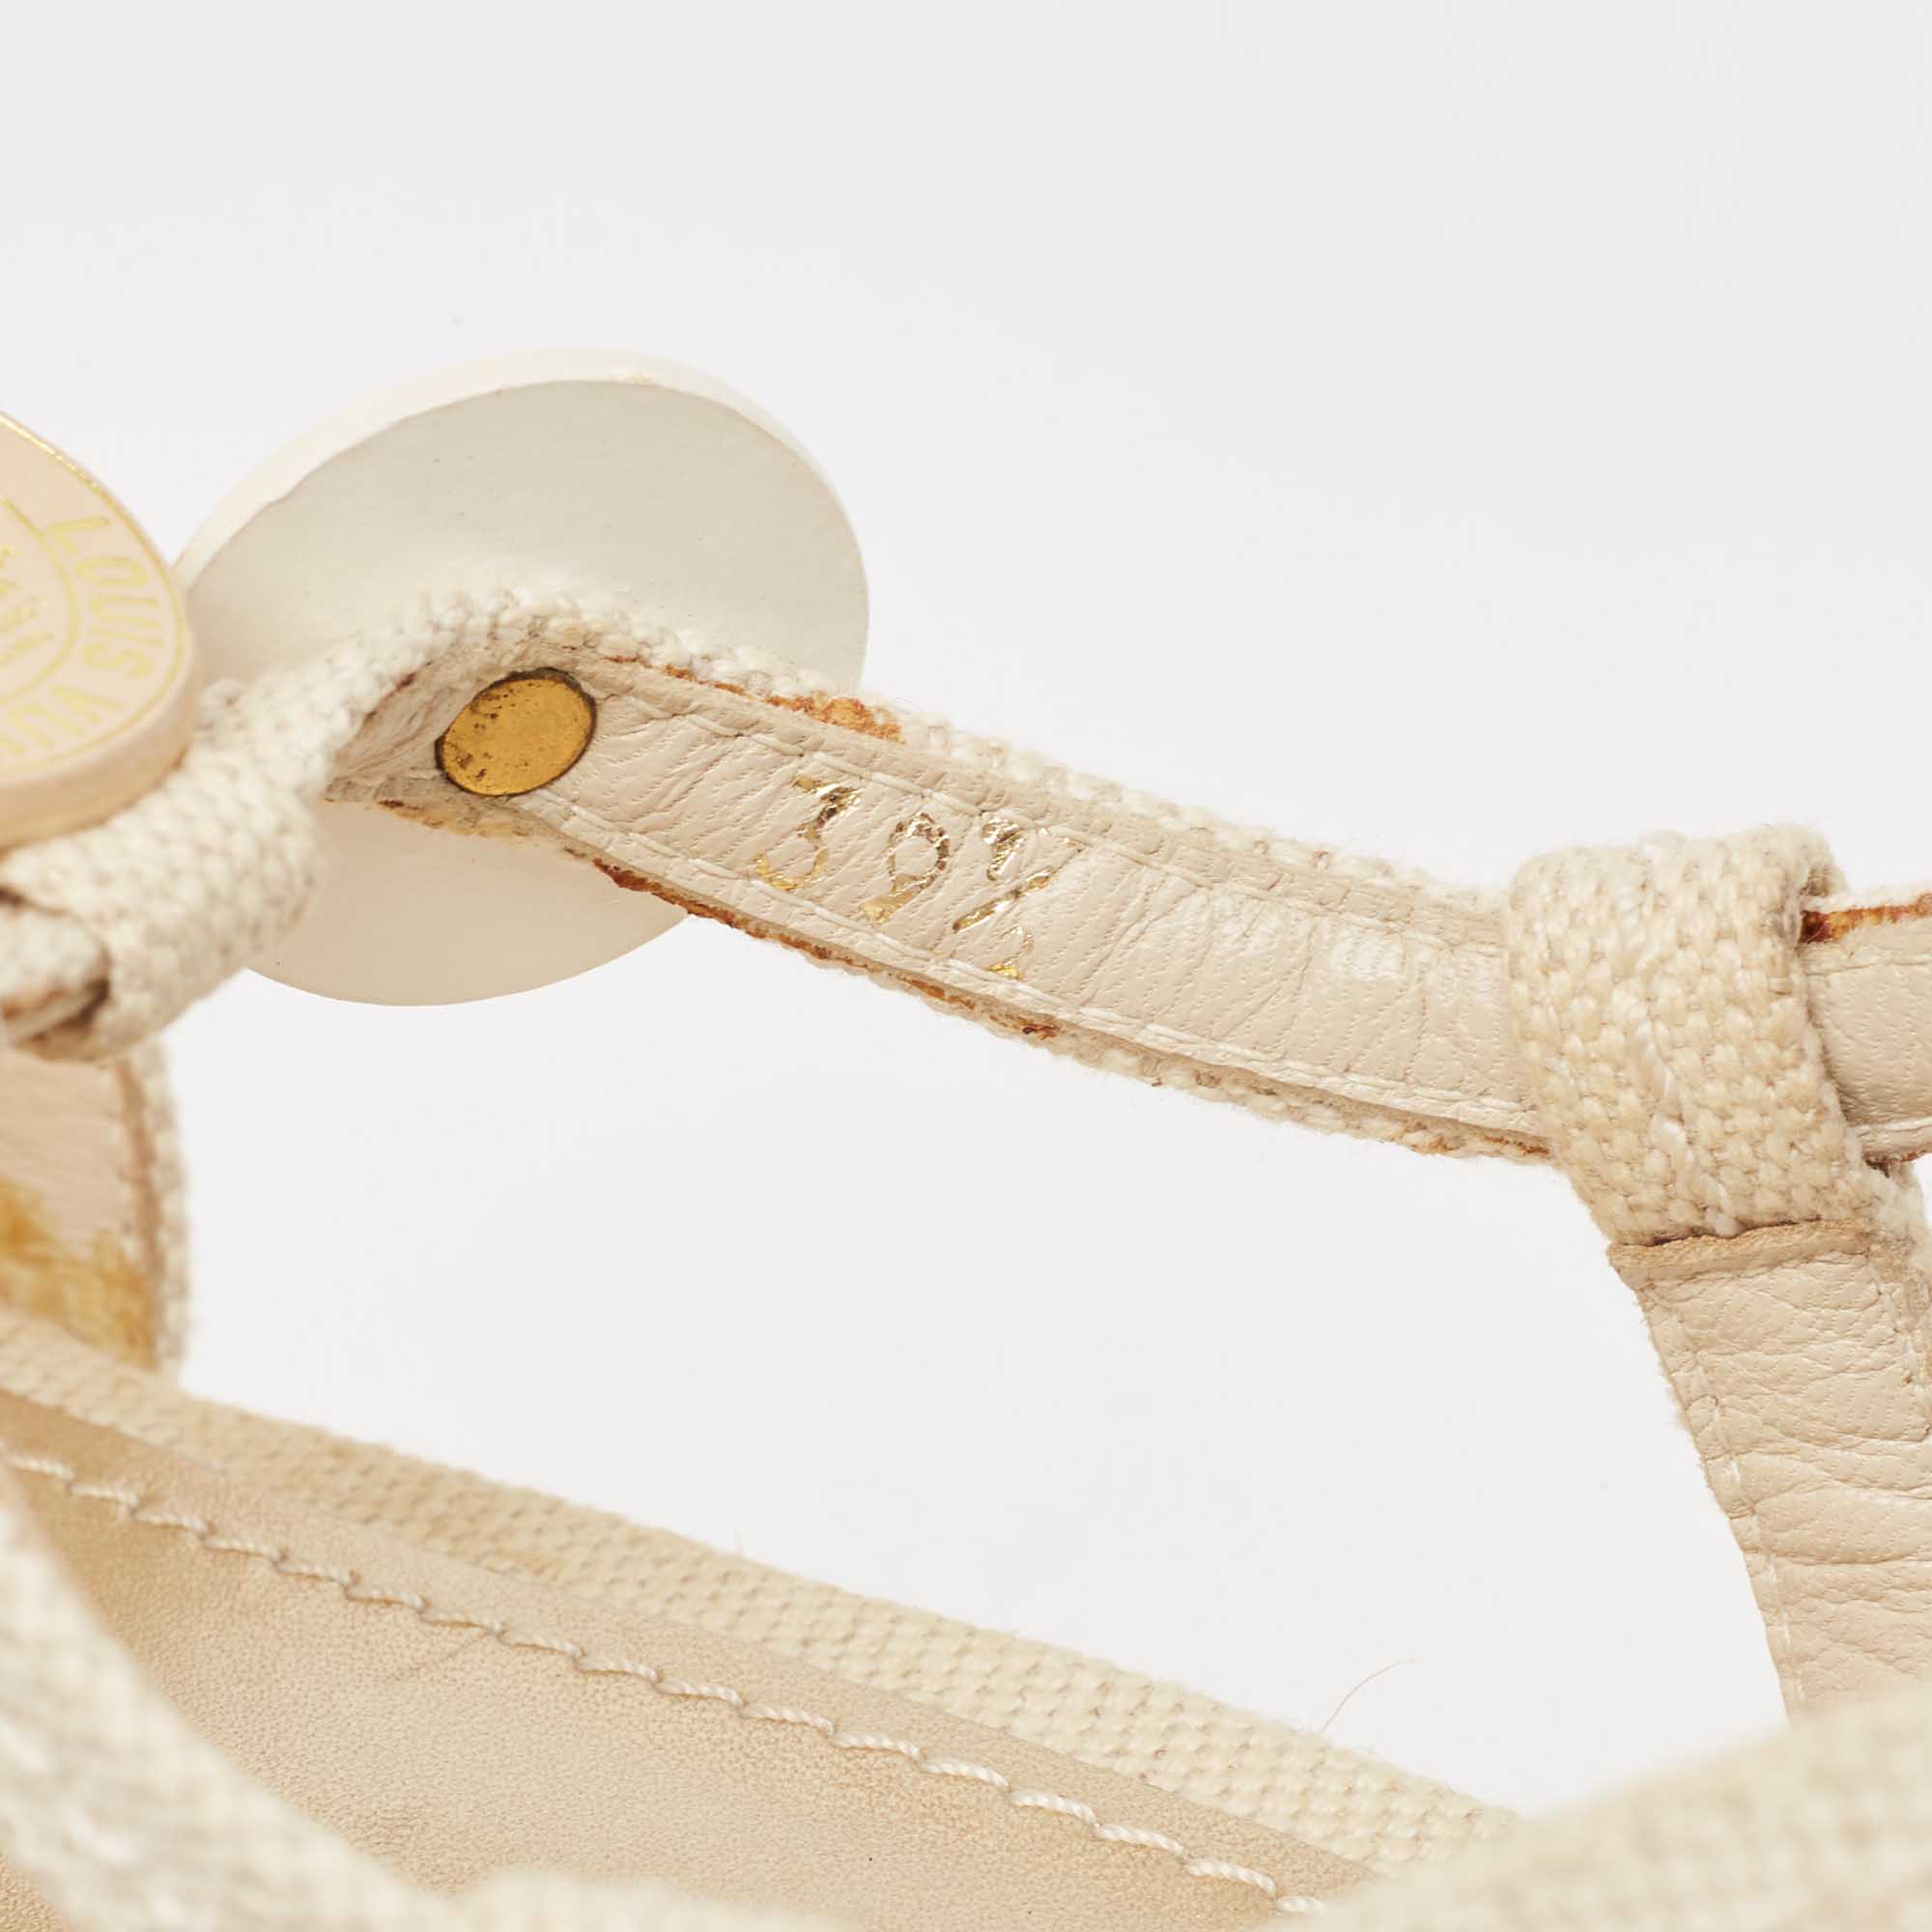 Louis Vuitton Cream Canvas Wedge Espadrilles Sandals Size 37